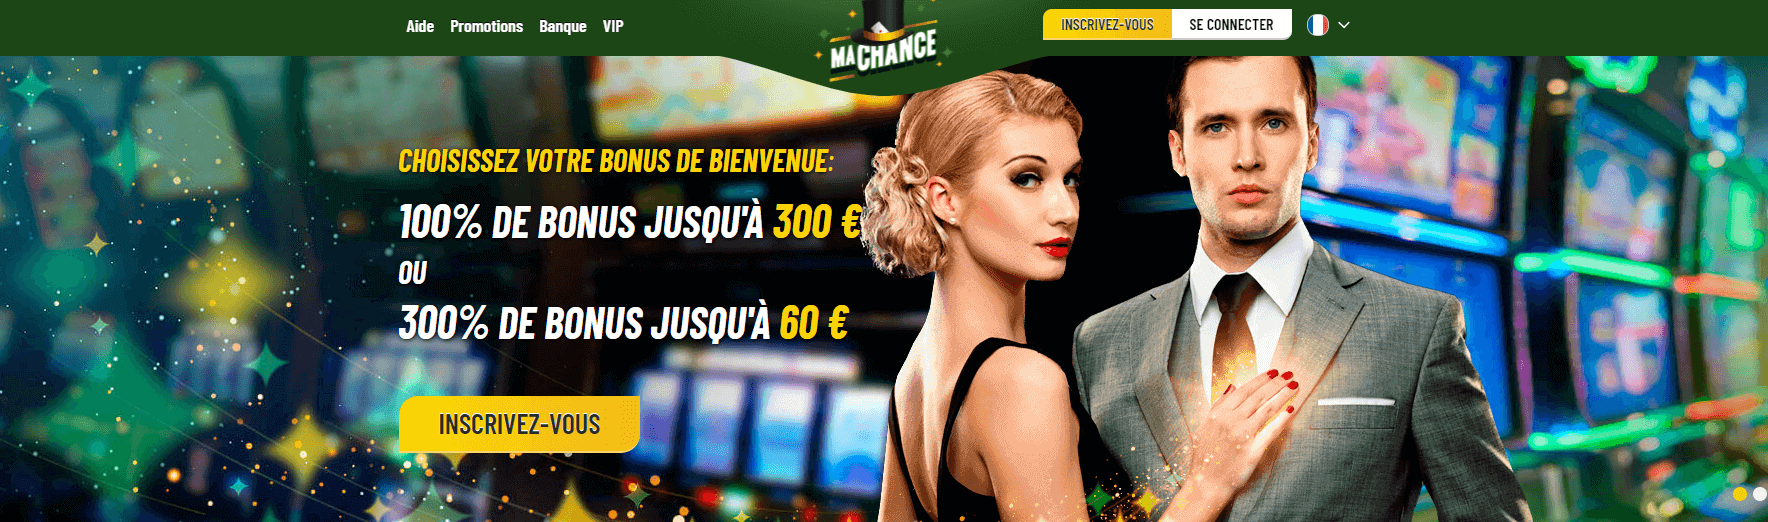 Revue du My Chance Casino et revue 2022 - 100% de bonus jusqu'à 250 €